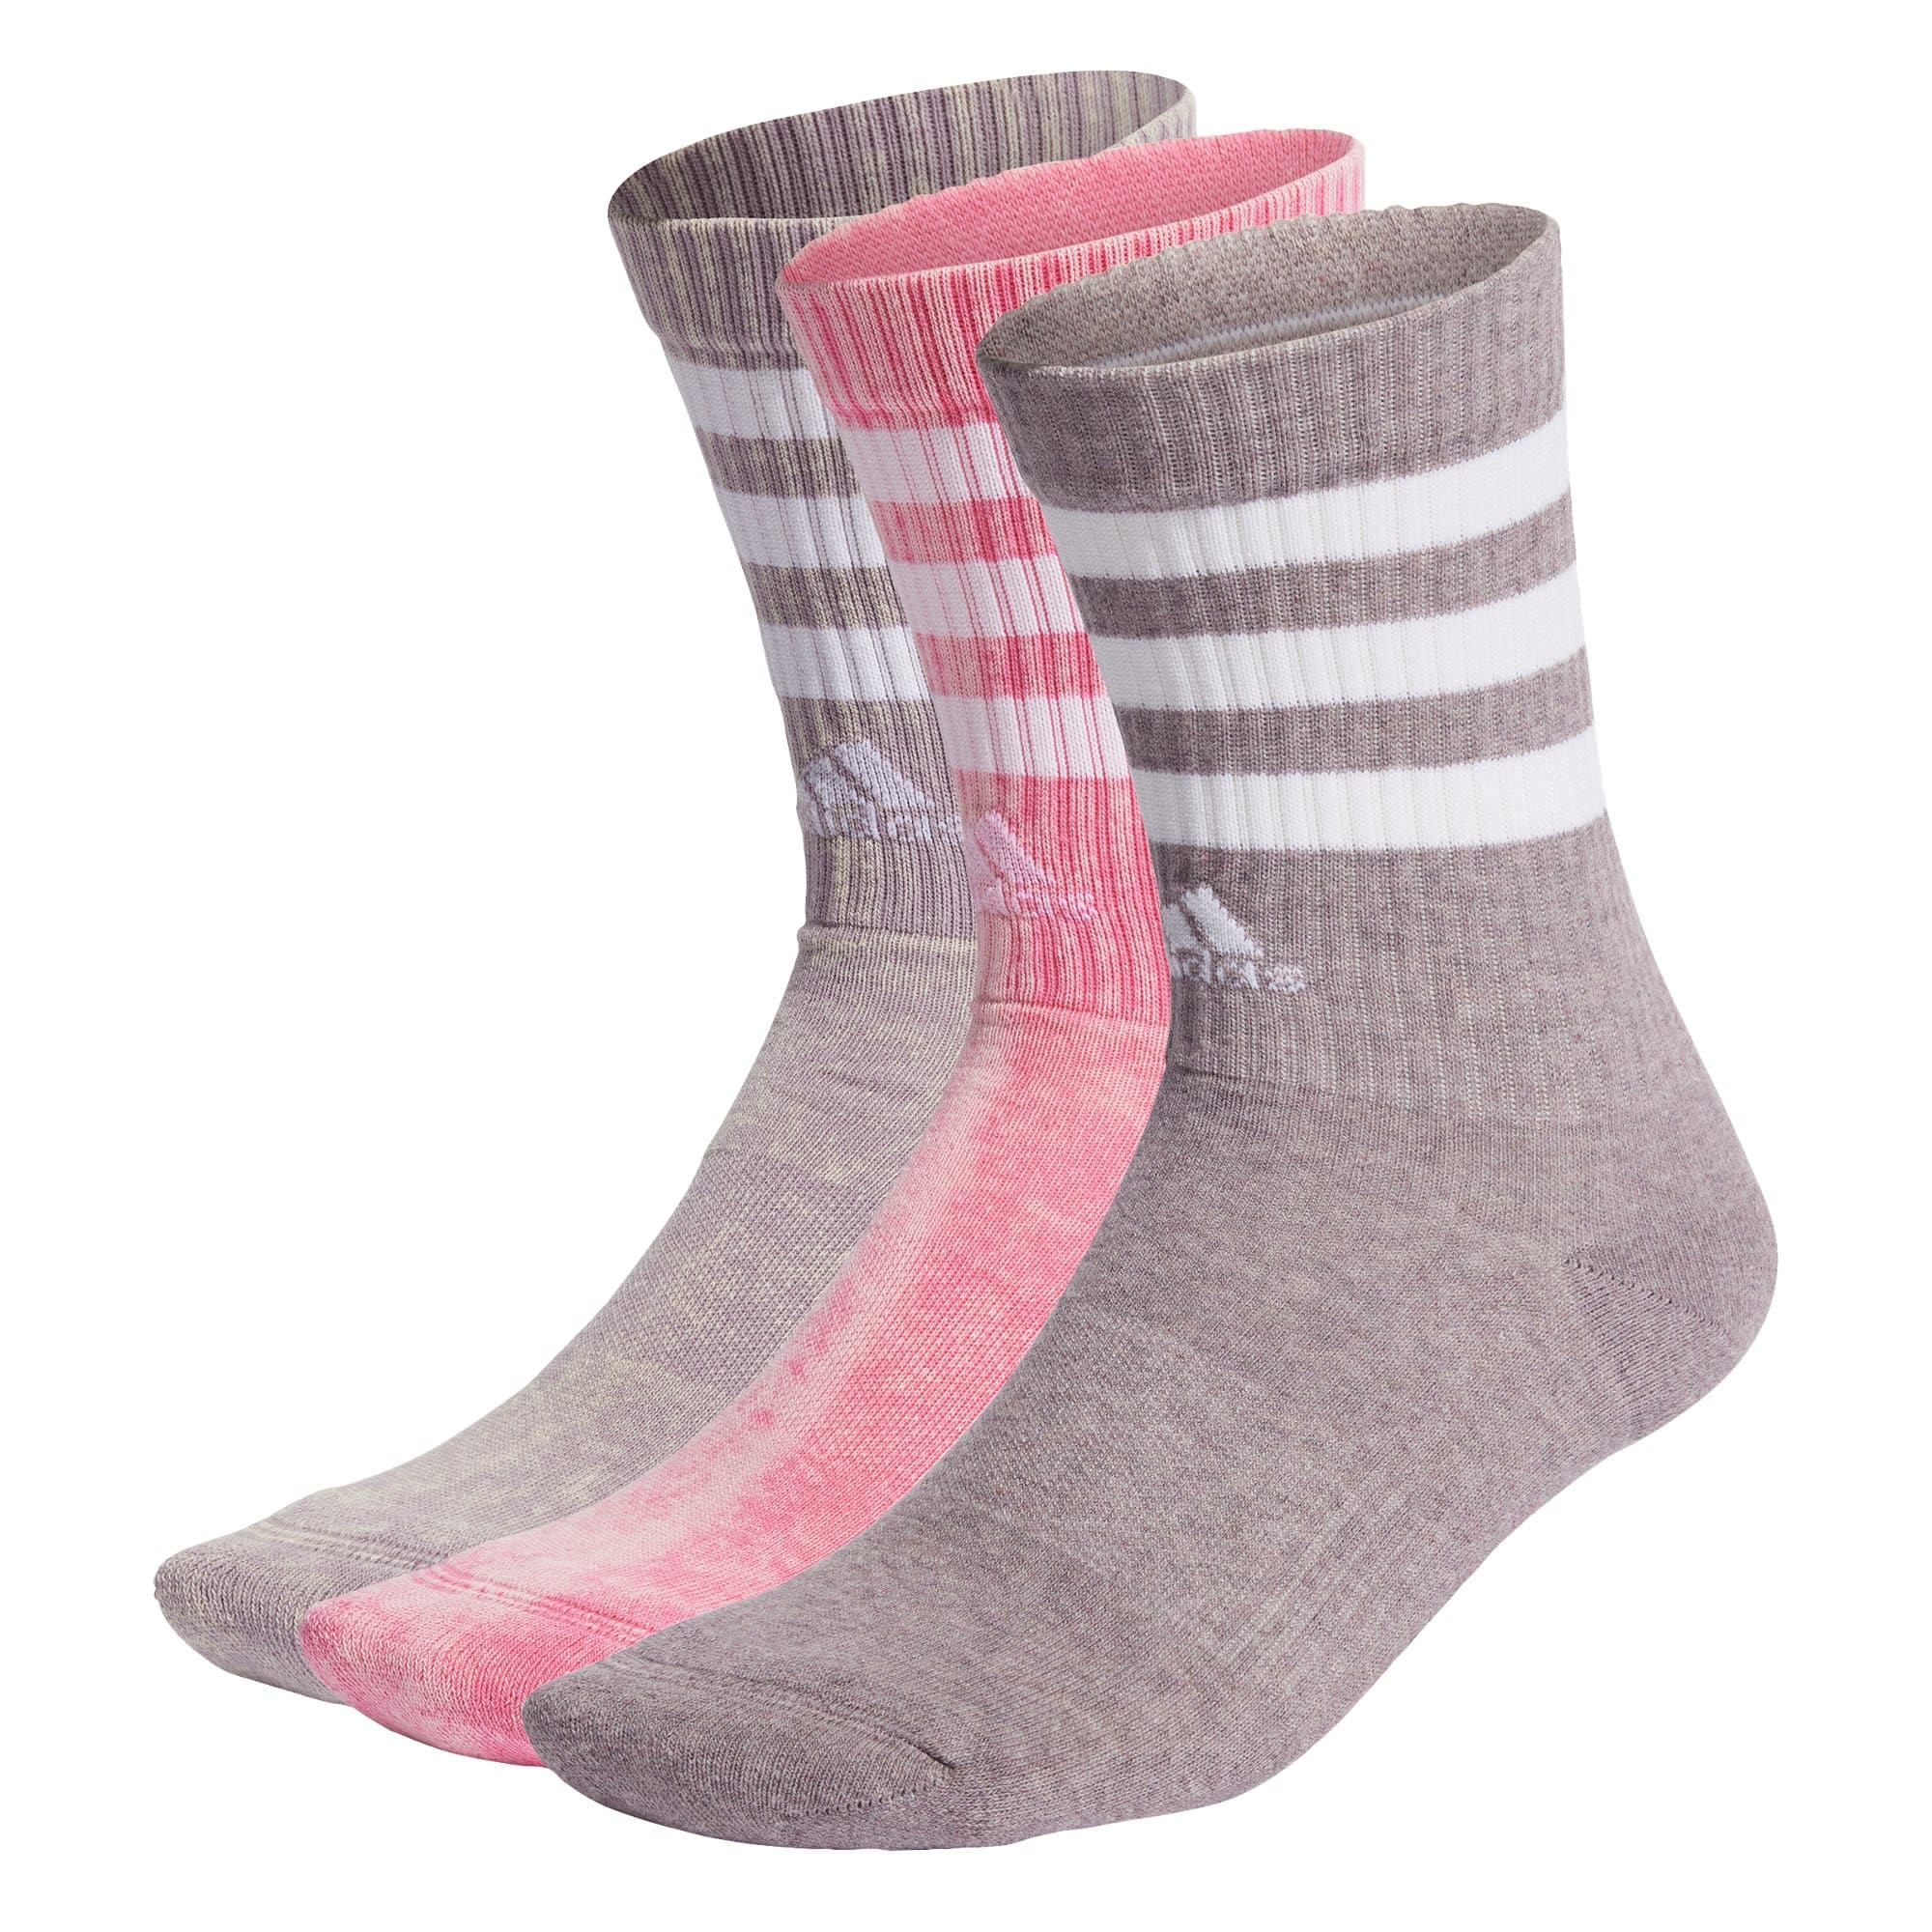 ADIDAS SPORTSWEAR Sportinės kojinės alyvinė spalva / rausvai violetinė spalva / pitajų spalva / balta